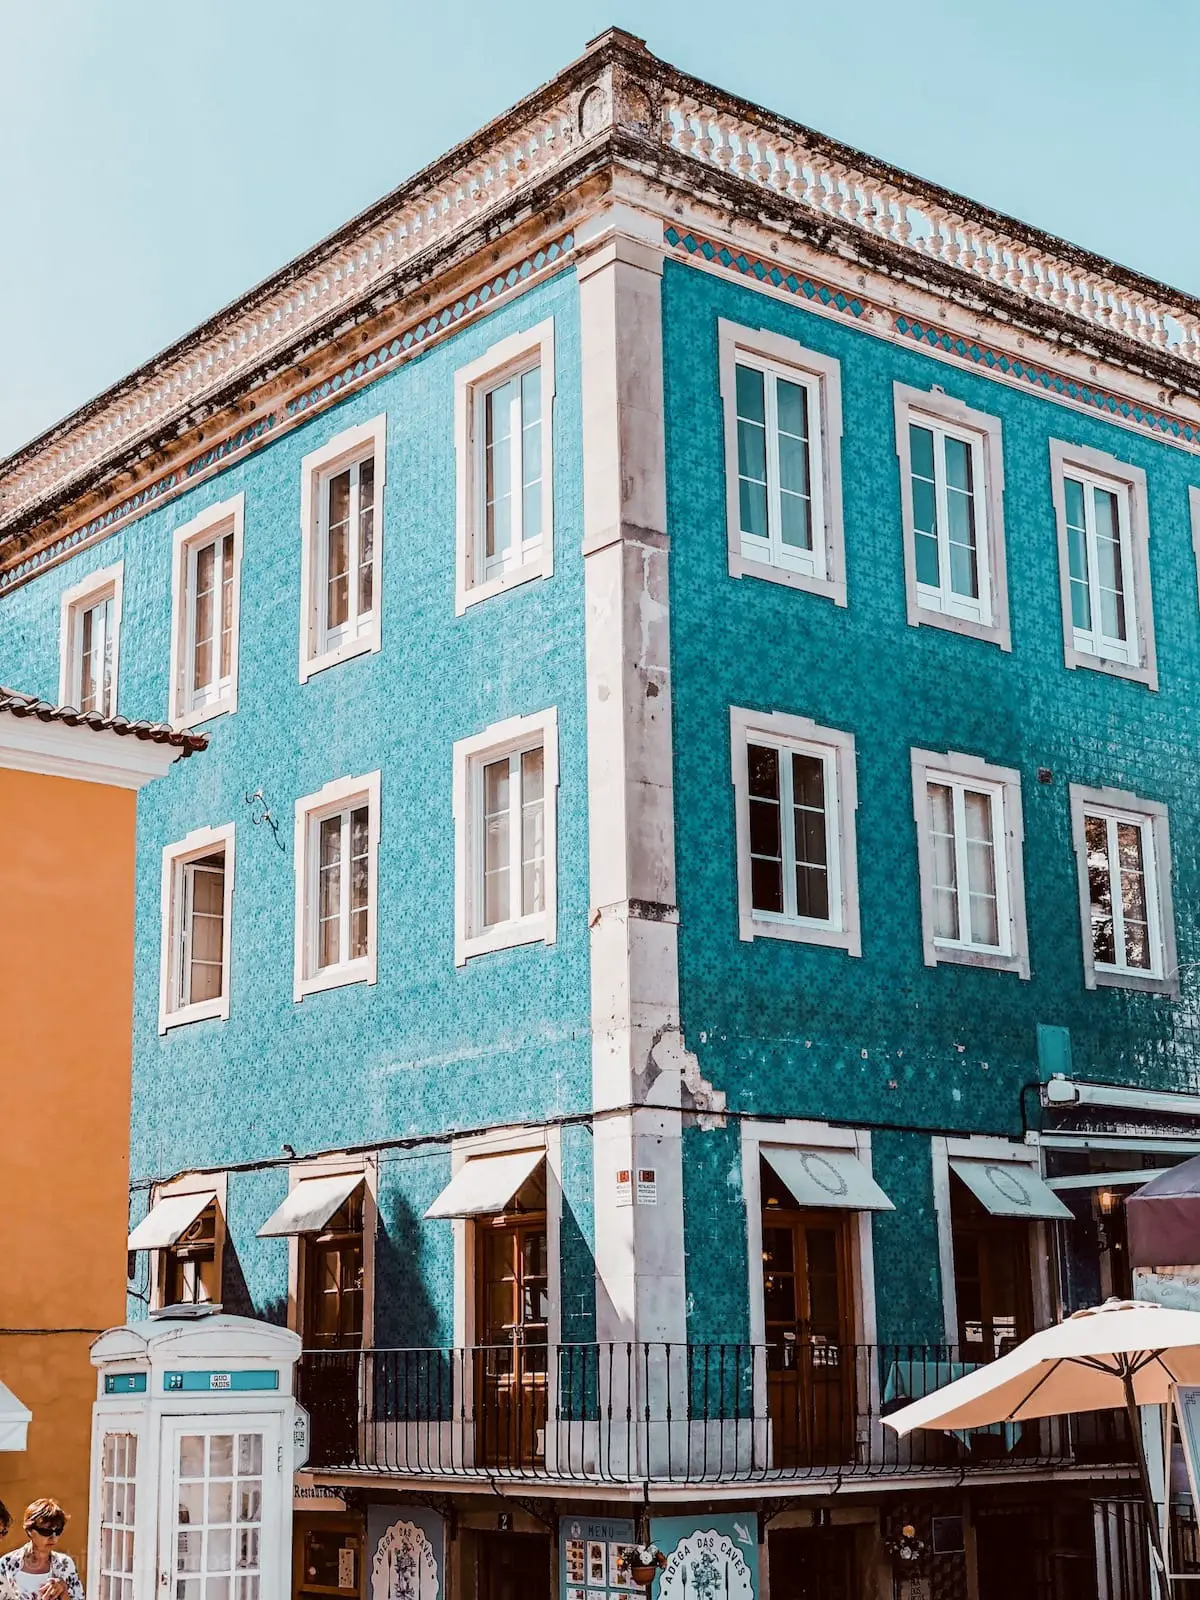 Ein Tag in Sintra, Lissabon Tagesausflug in Portugal, Sintra Sehenswürdigkeiten, Anreise nach Sintra, Sintra Altstadt